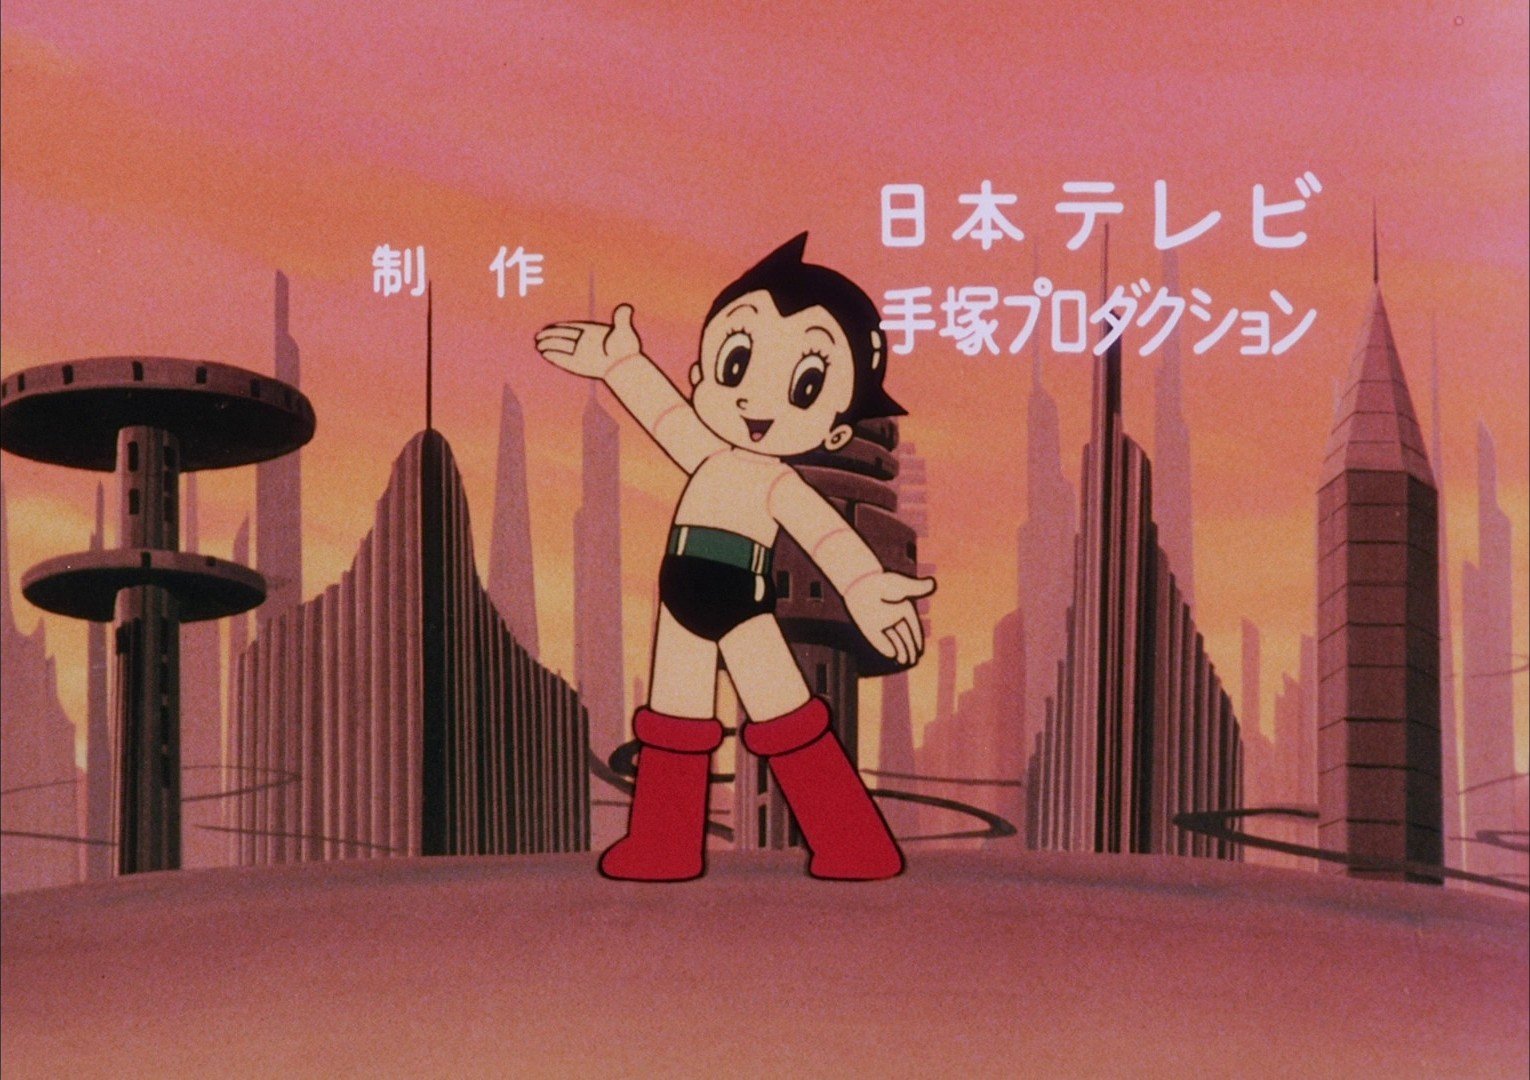 Astro-Boy-1980-1981-Noboru-Ishiguro-dvd-01